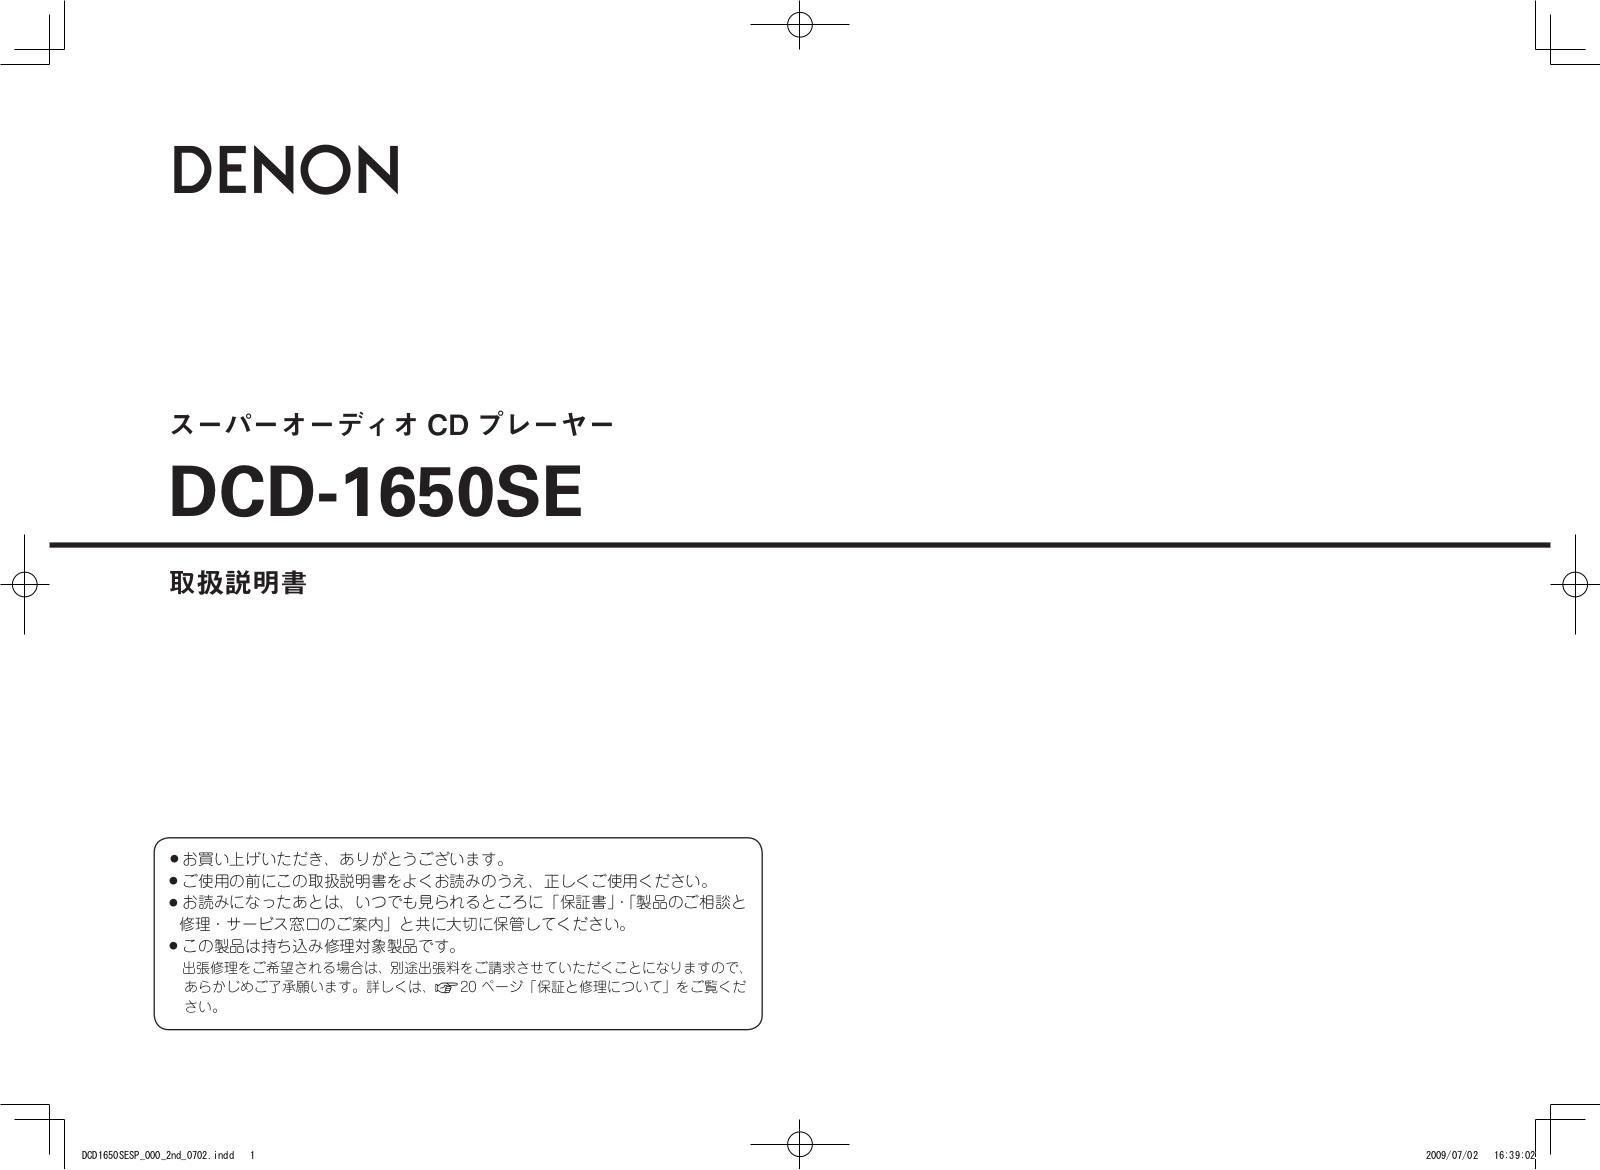 Denon DCD-1650SE Owner's Manual